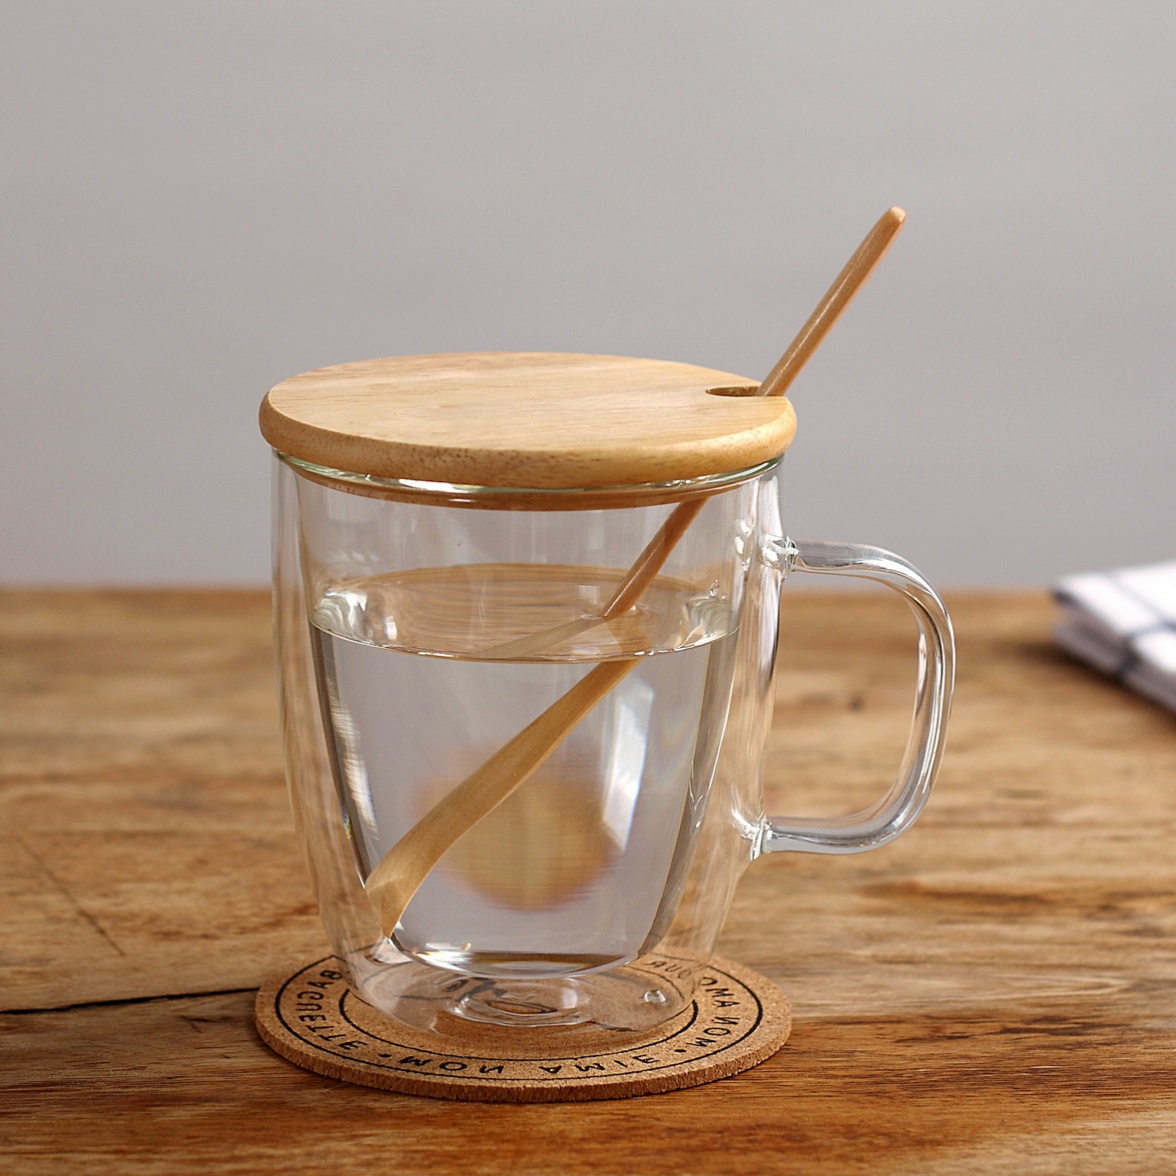 创意双层玻璃杯带盖加厚耐热玻璃杯马克杯咖啡杯星巴克玻璃杯水杯